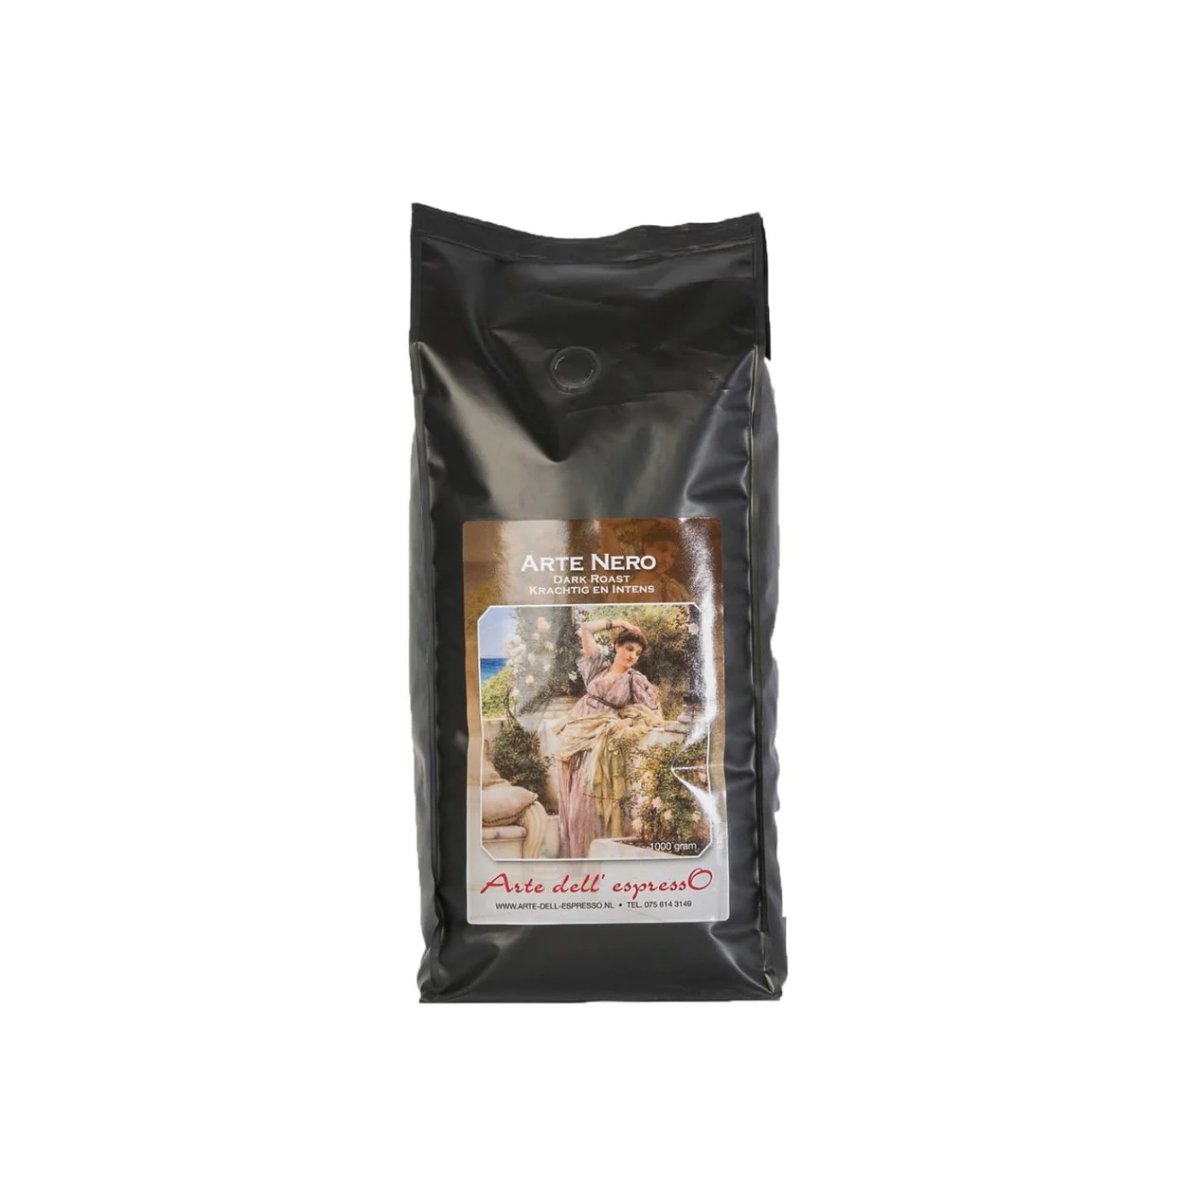 Arte Nero arabica koffiebonen private label medium/dark roast Arte dell' espressO in zwarte koffieverpakking 6096524288271